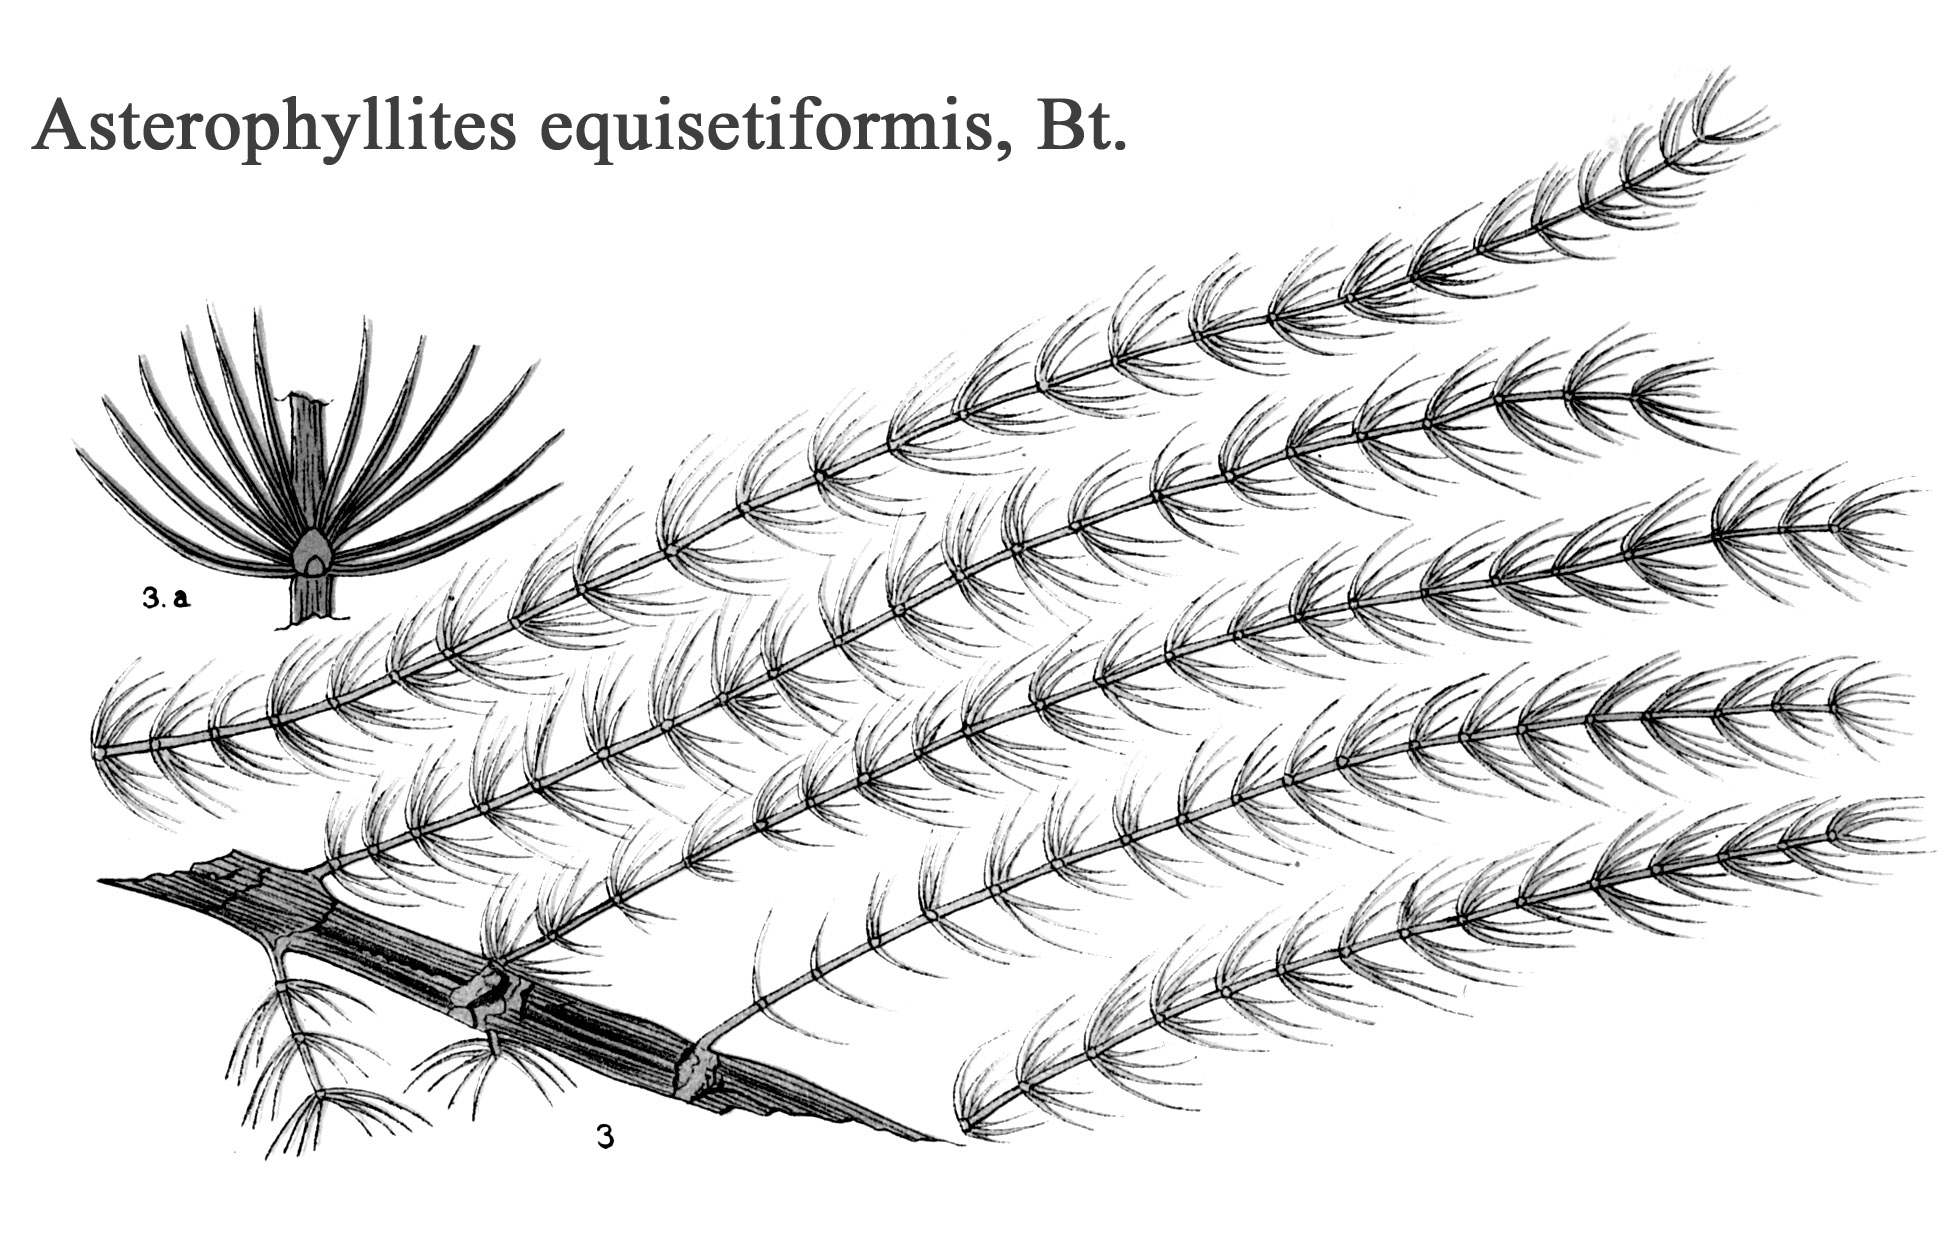 Asterophyllites equisetiformis, Plate II